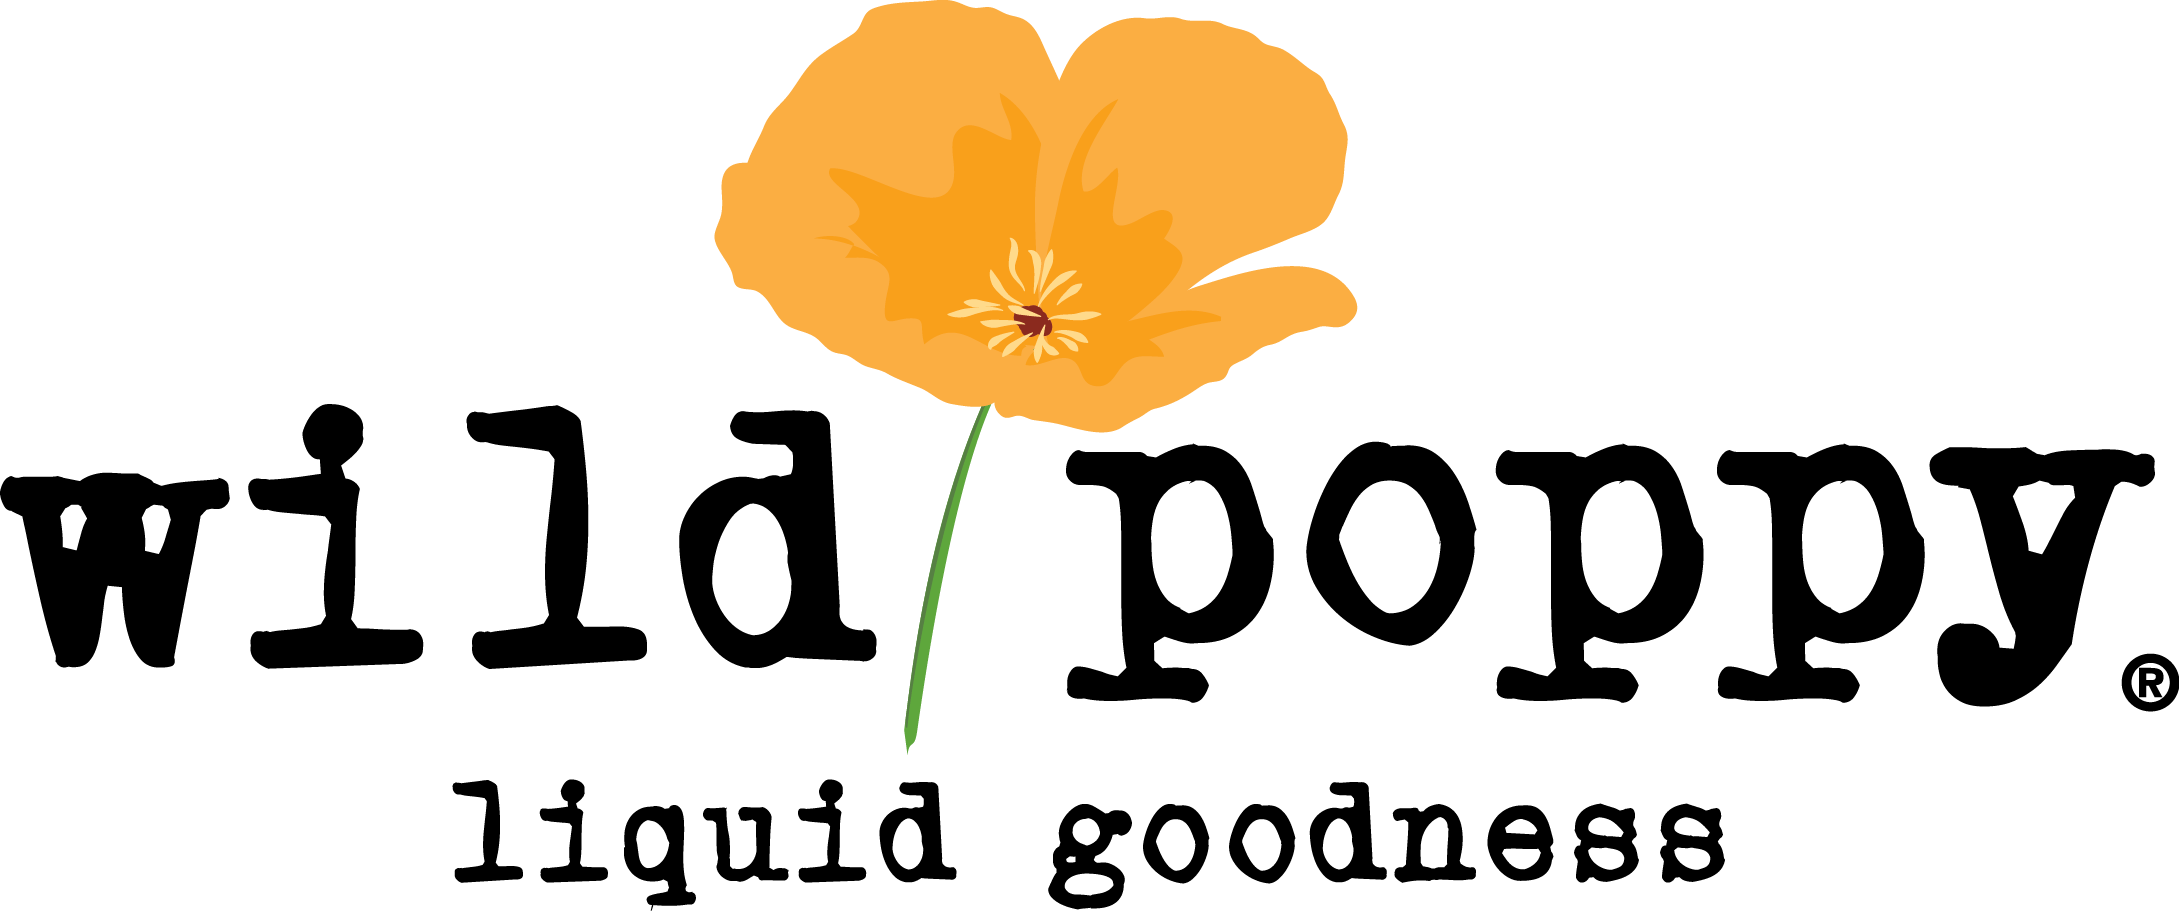 Poppy Company Logo - Wild Poppy